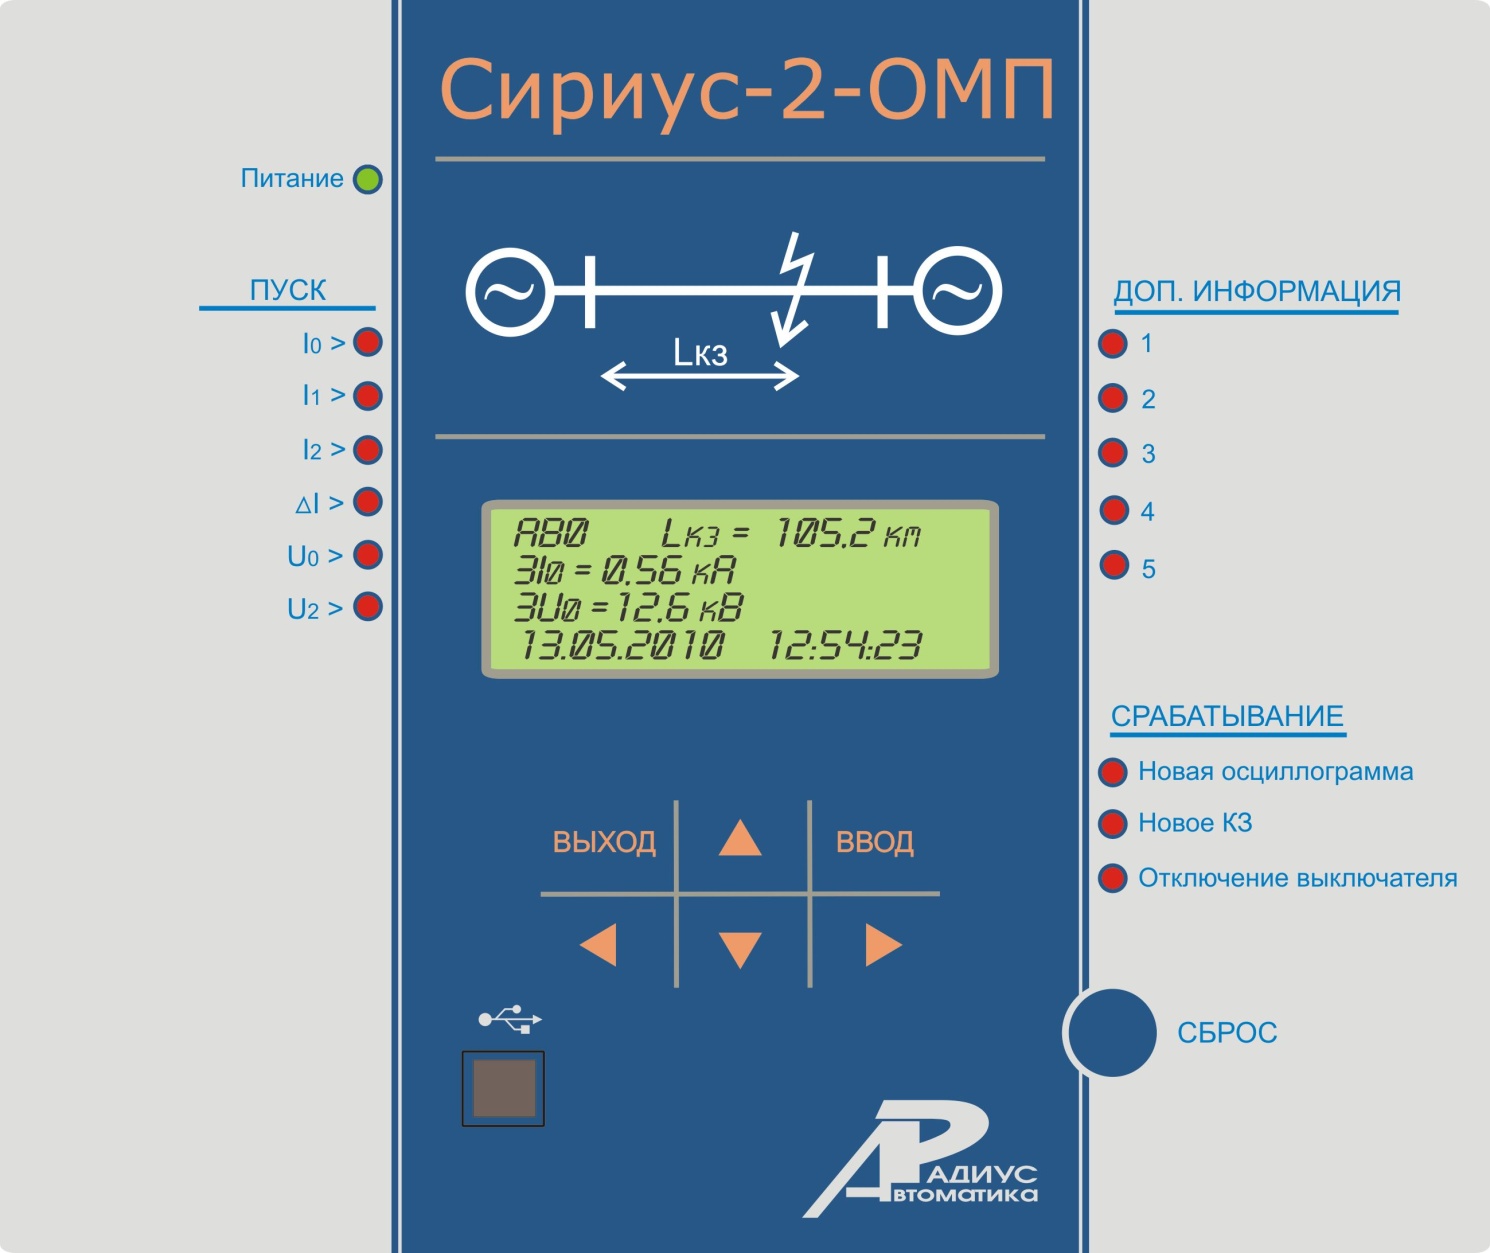 СИРИУС-2-ОМП - устройство определения места повреждения на воздушных линиях электропередачи 6-750 кВ